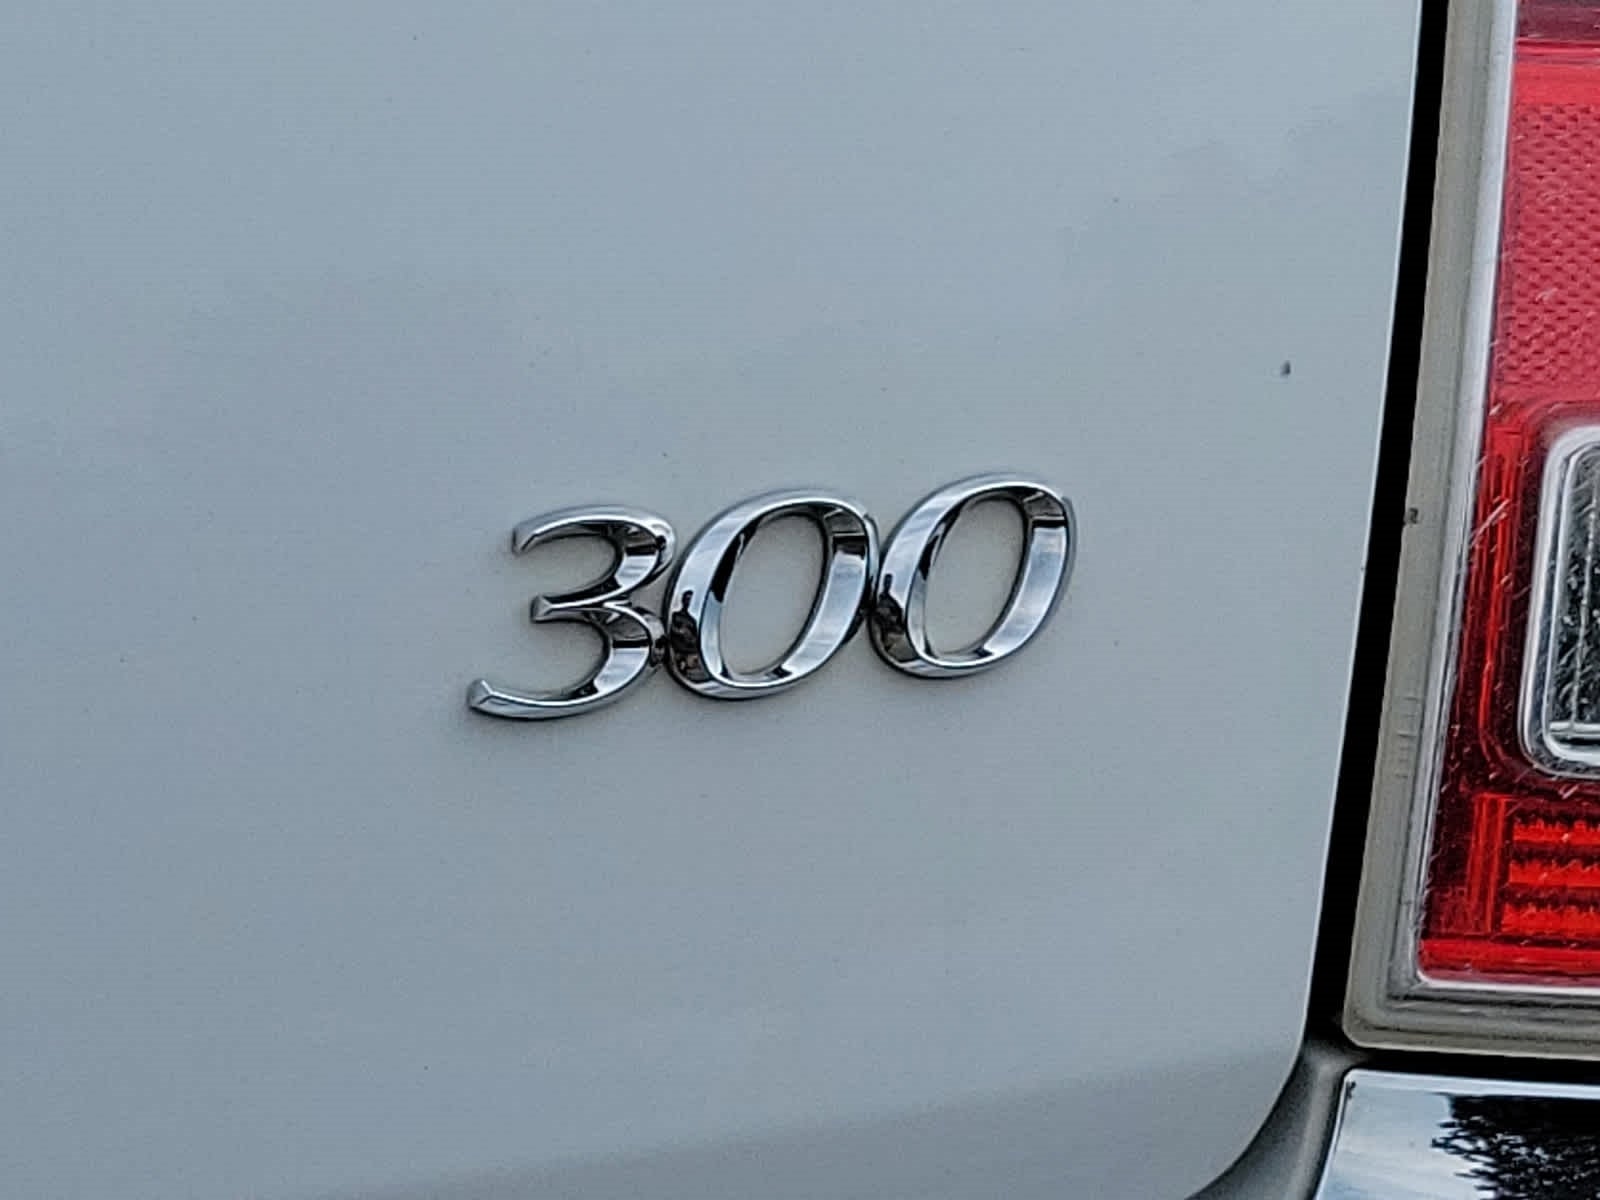 2014 Chrysler 300 4dr Sdn AWD